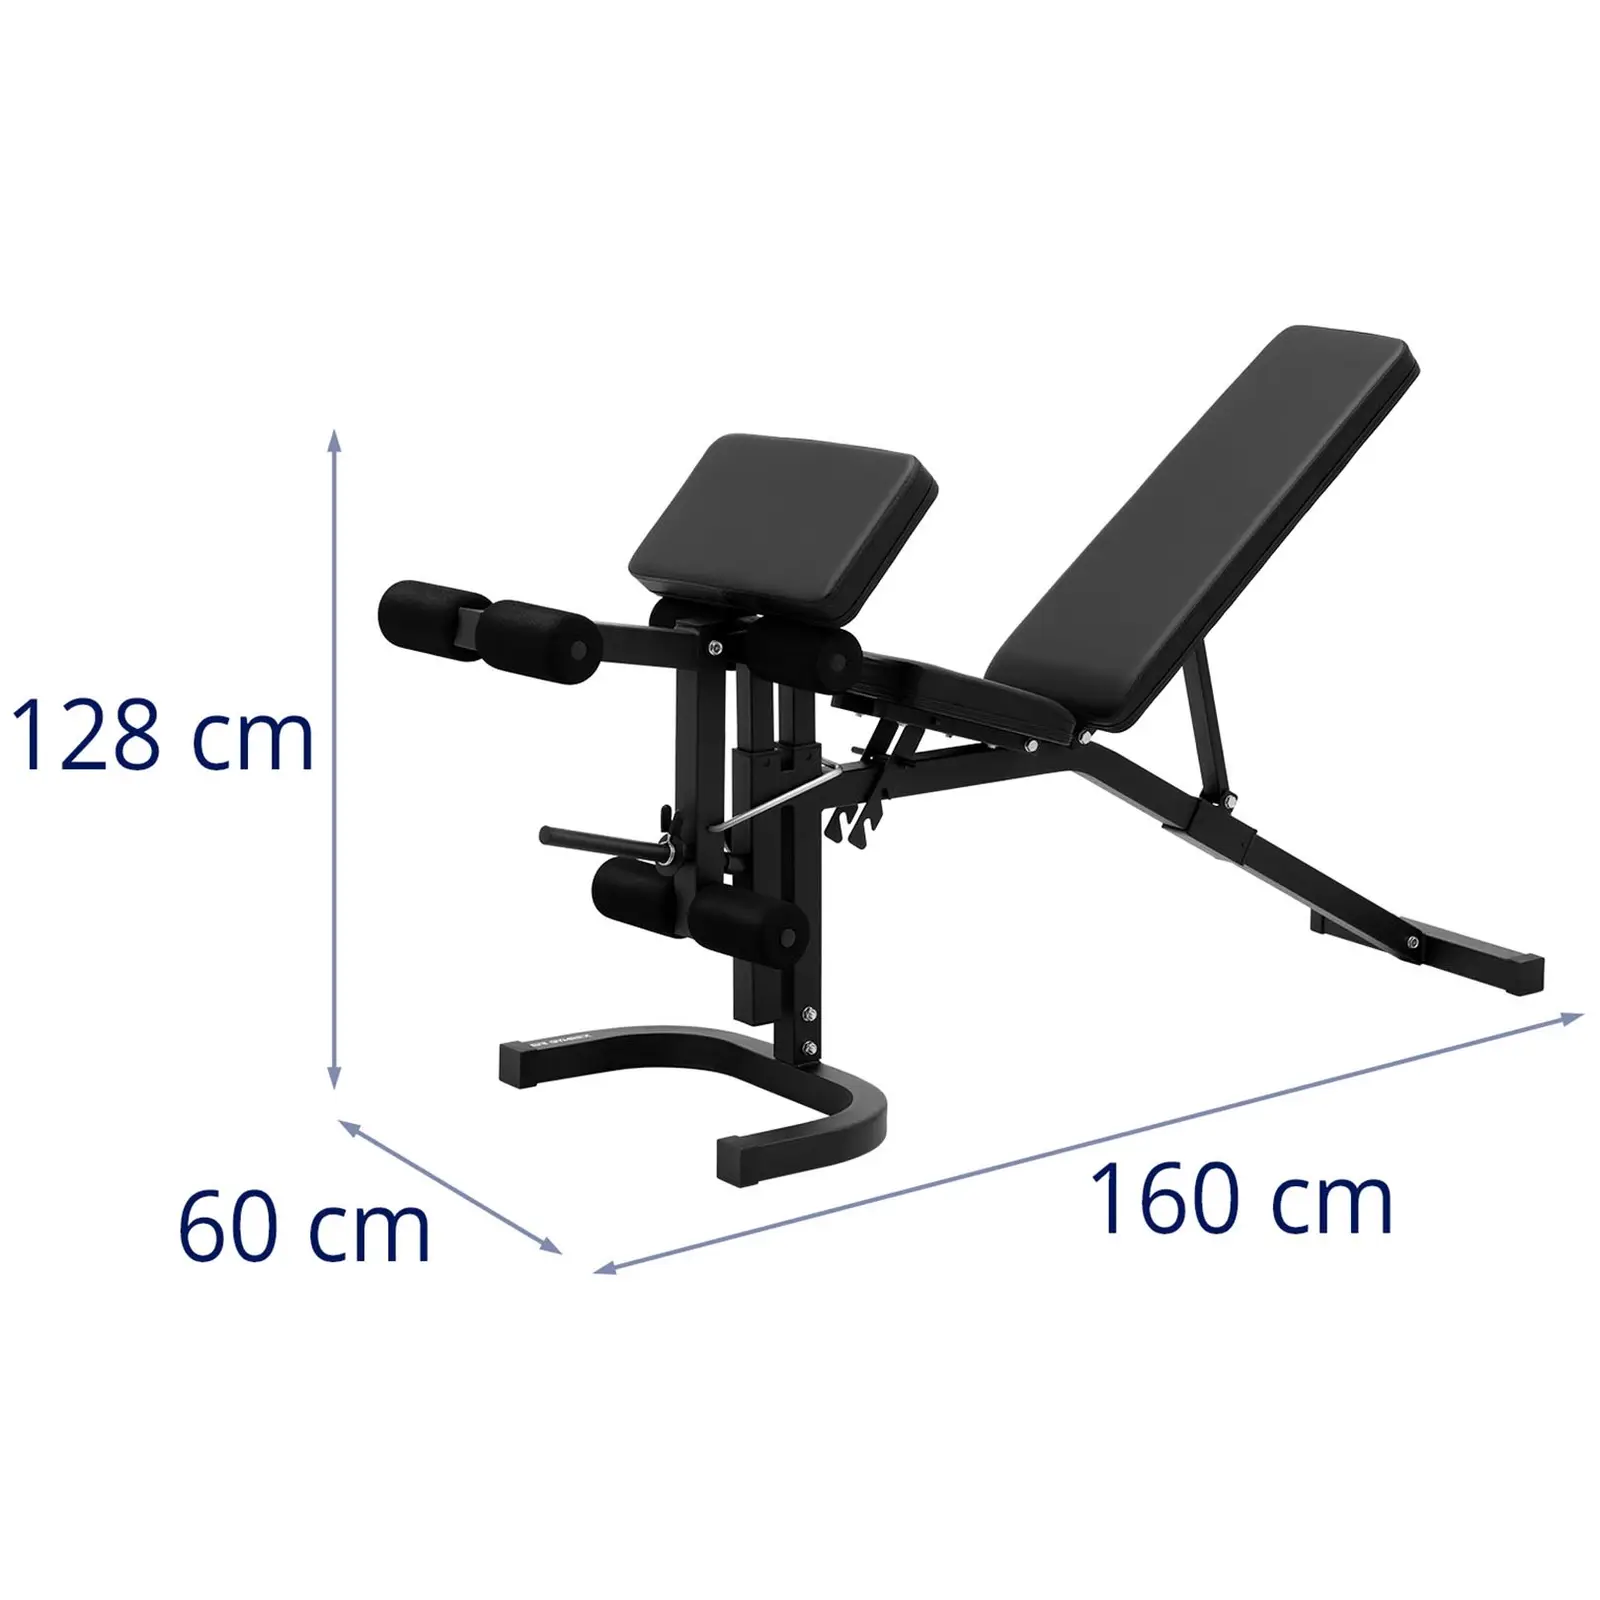 Banco de musculación reclinable - hasta 100 kg - ajustable - inclinable 90 - 180°